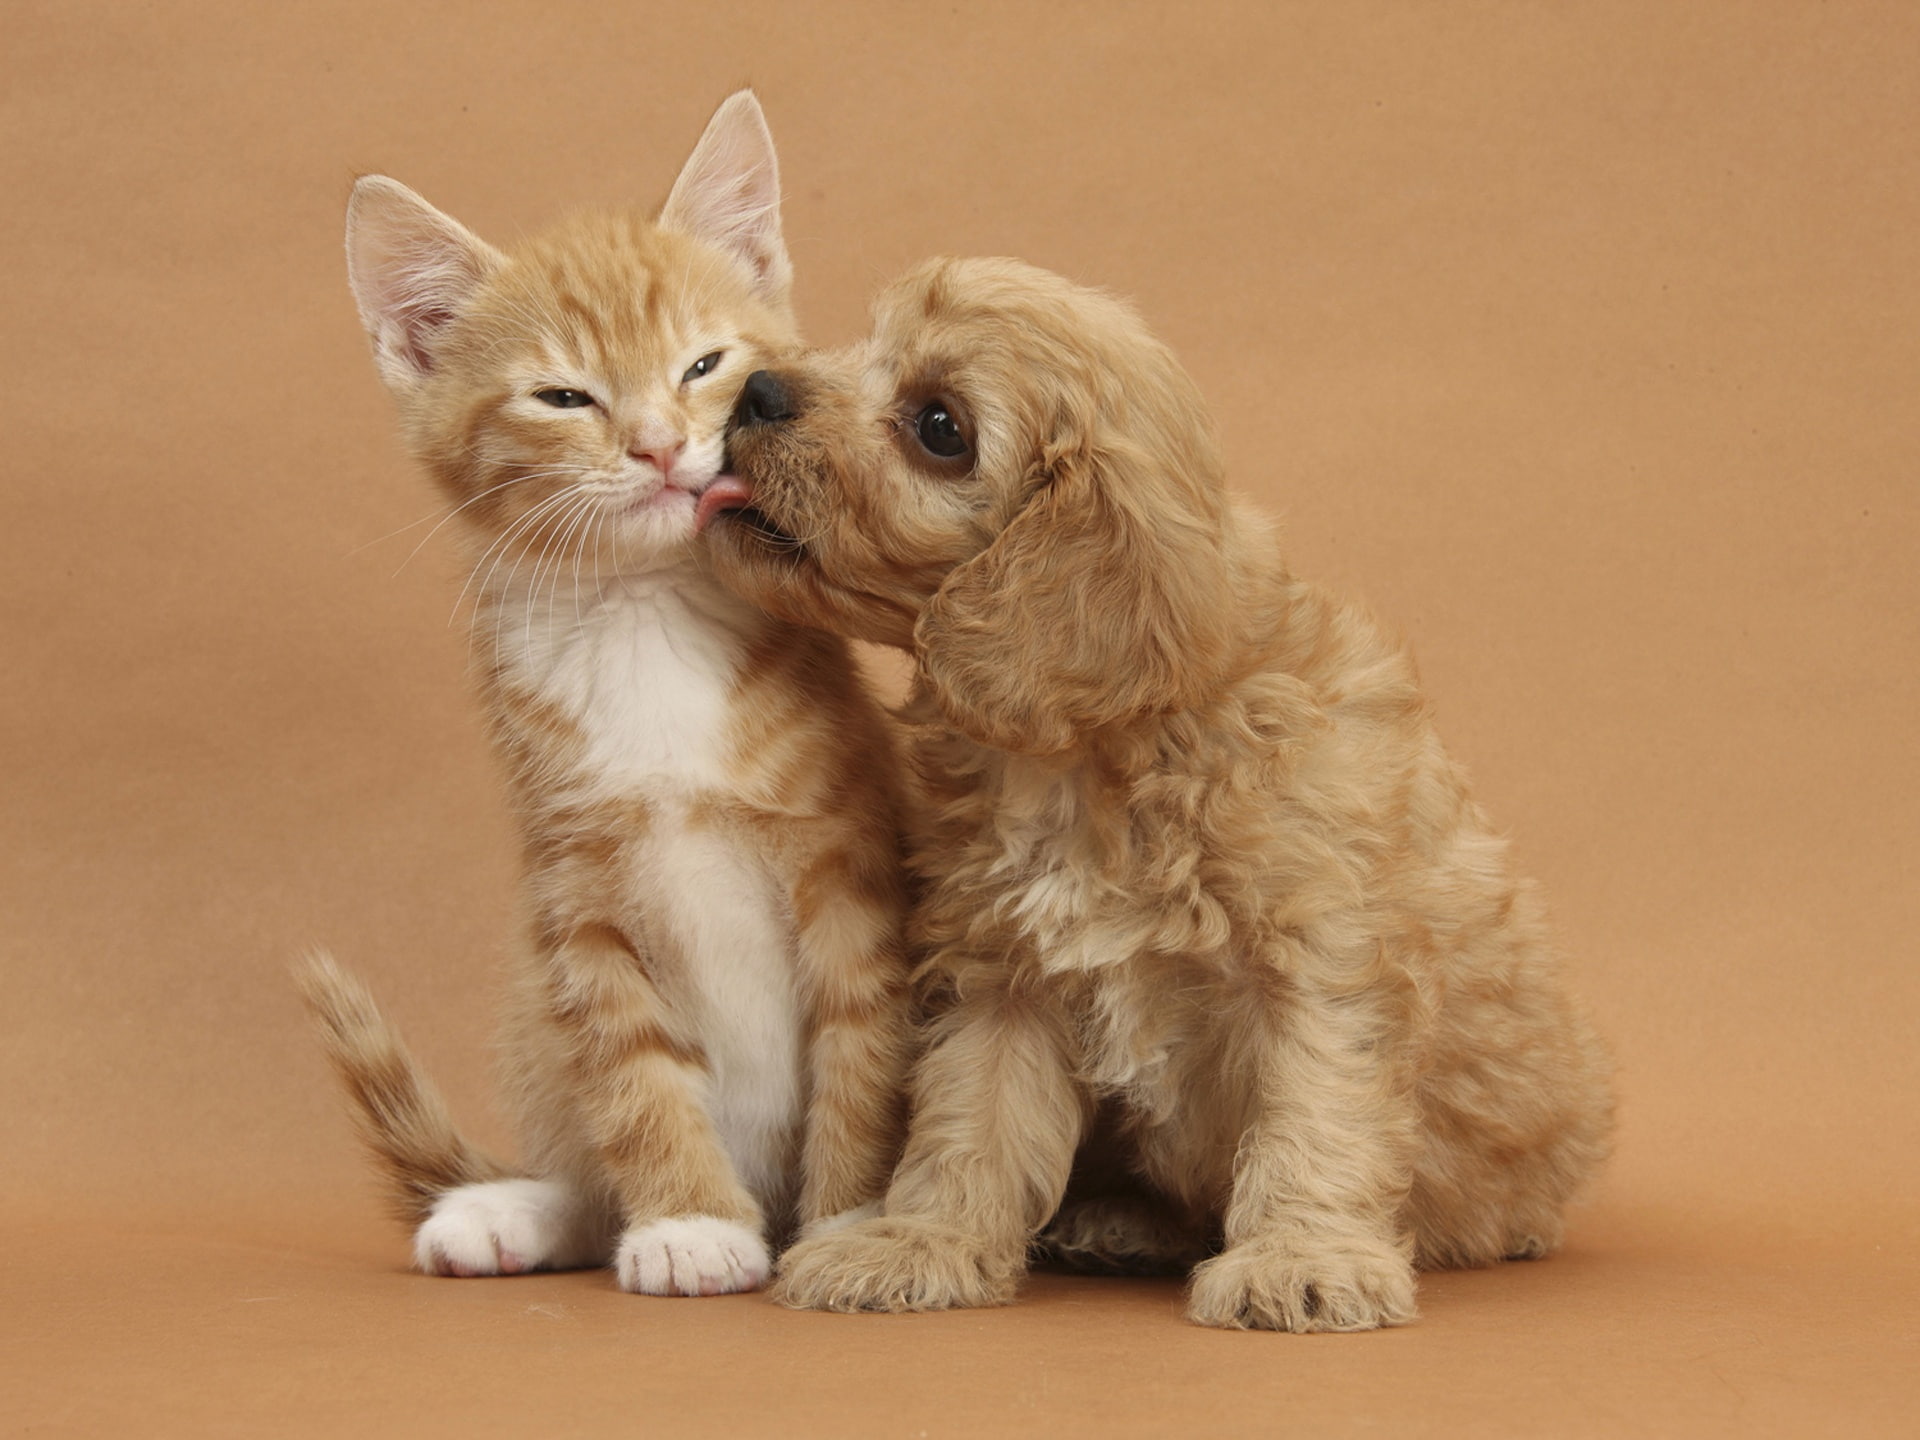 Kitten with puppy's friendship